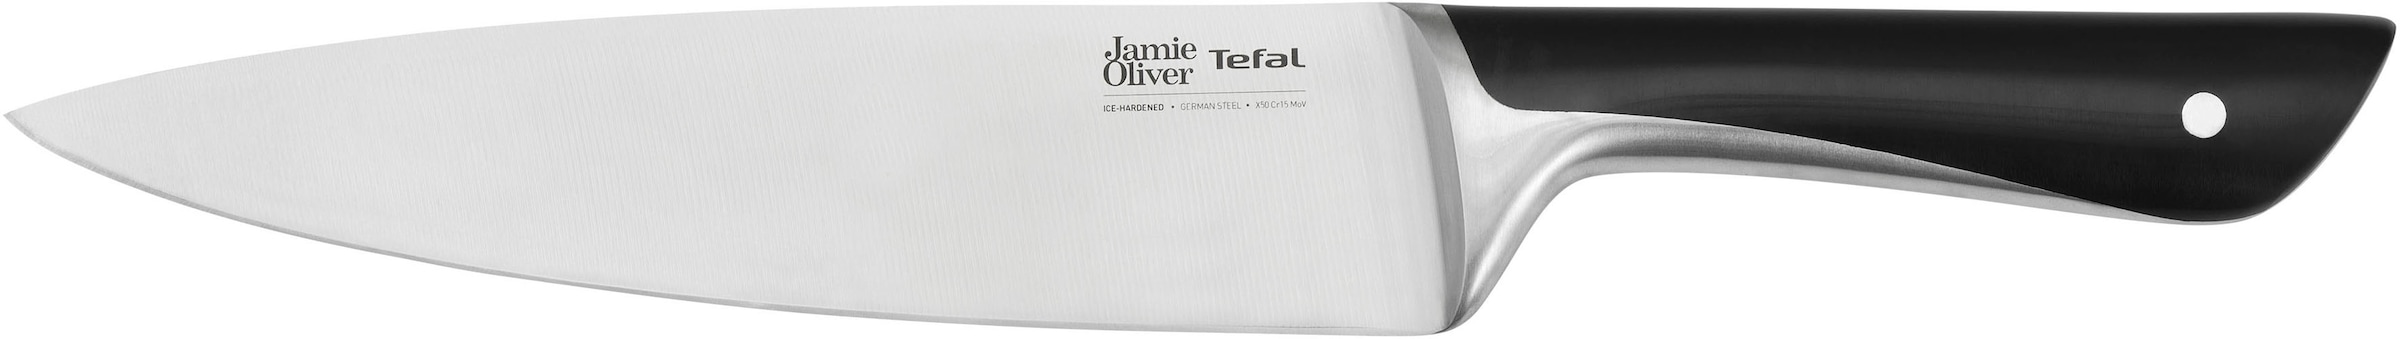 Tefal Jamie Oliver Cook Smart Pfannen-Set 24/28 (Edelstahl, 28 cm